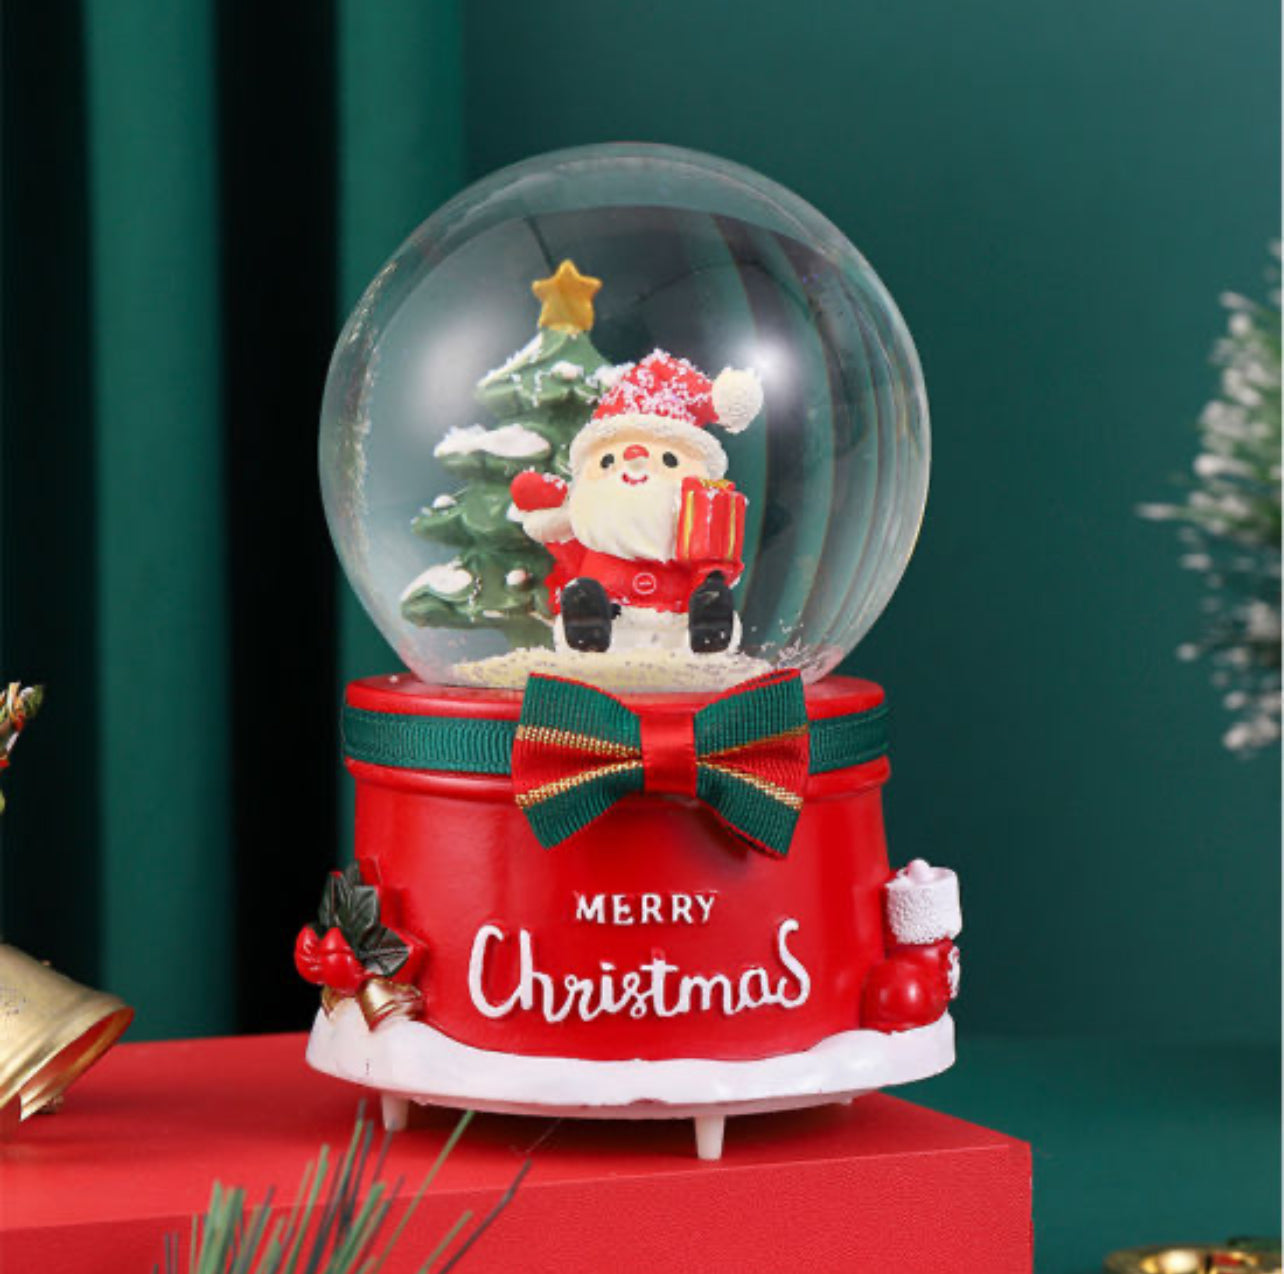 Christmas Crystal Ball Music Box with Snowflake